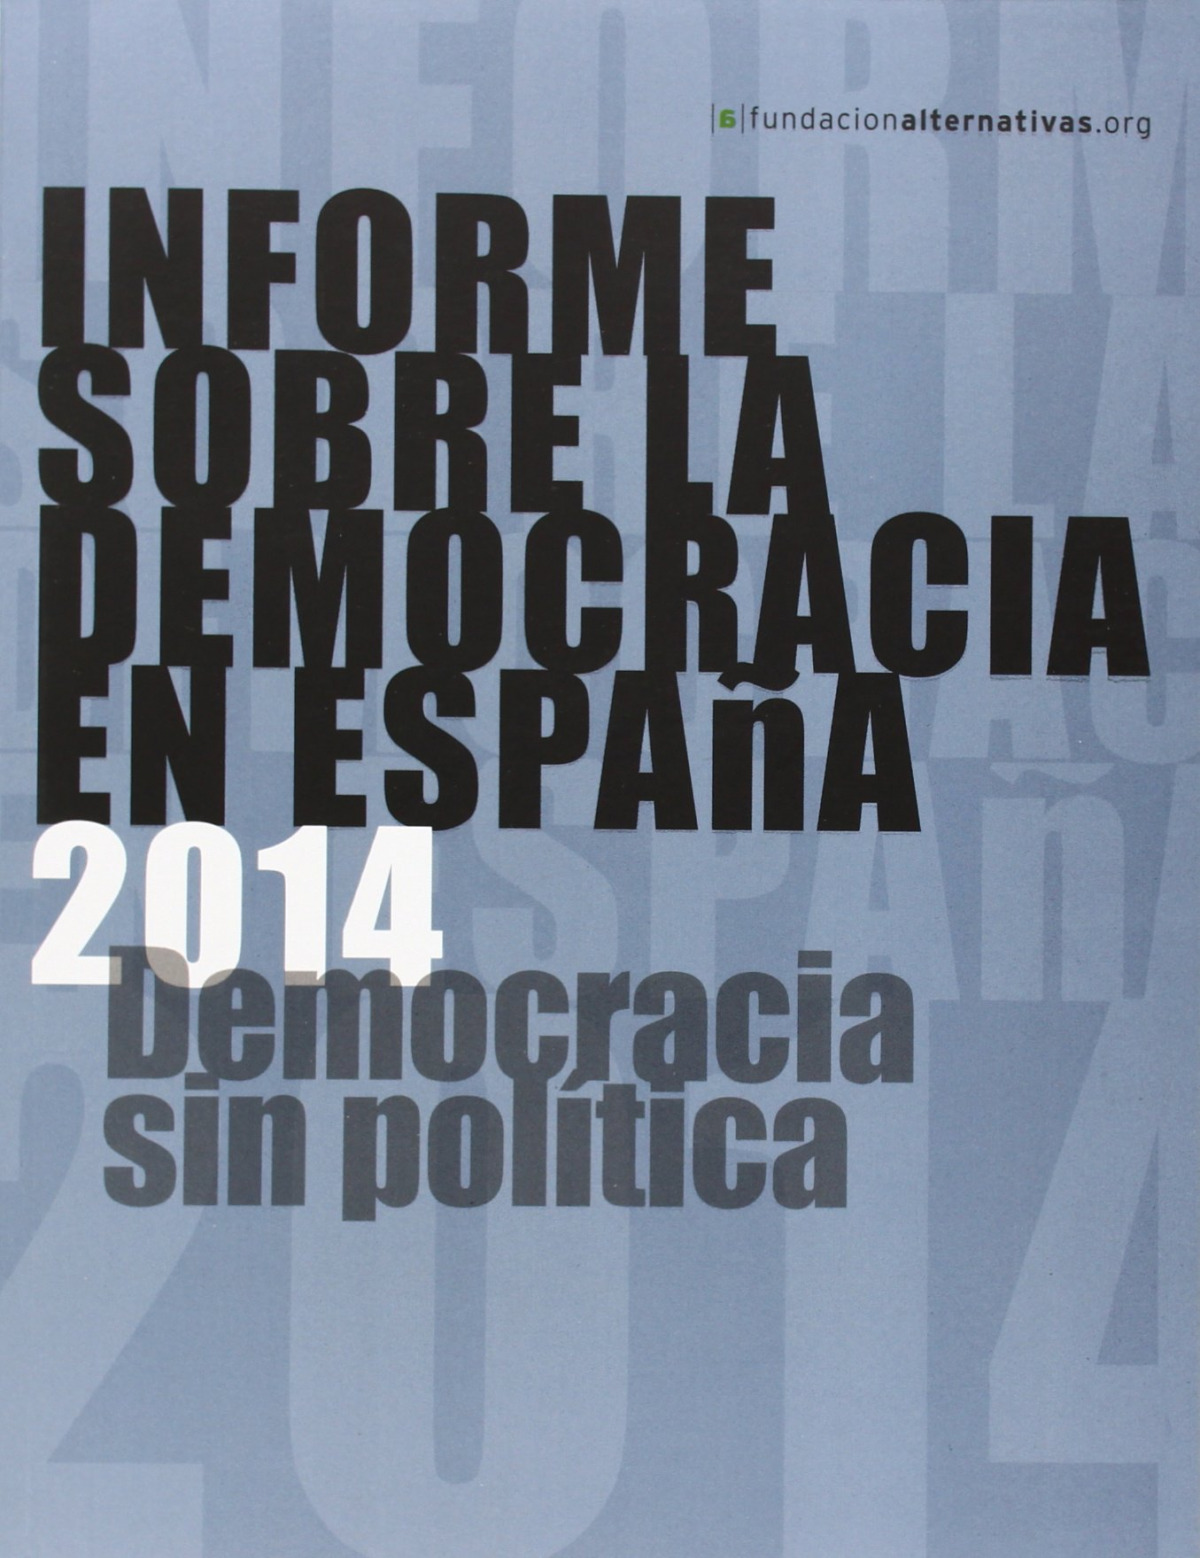 Informe sobre la democracia en españa 2014 democracia sin po - Aa.Vv